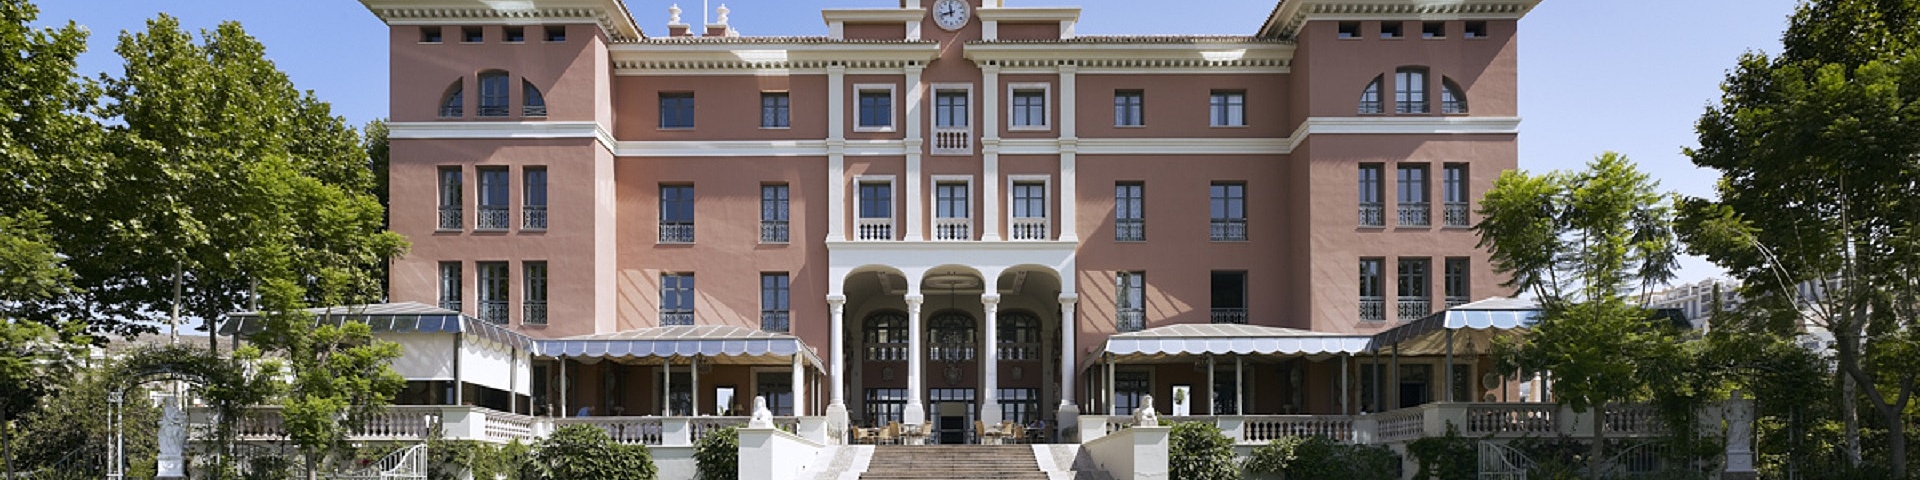 Villa Padierna Golf Resort